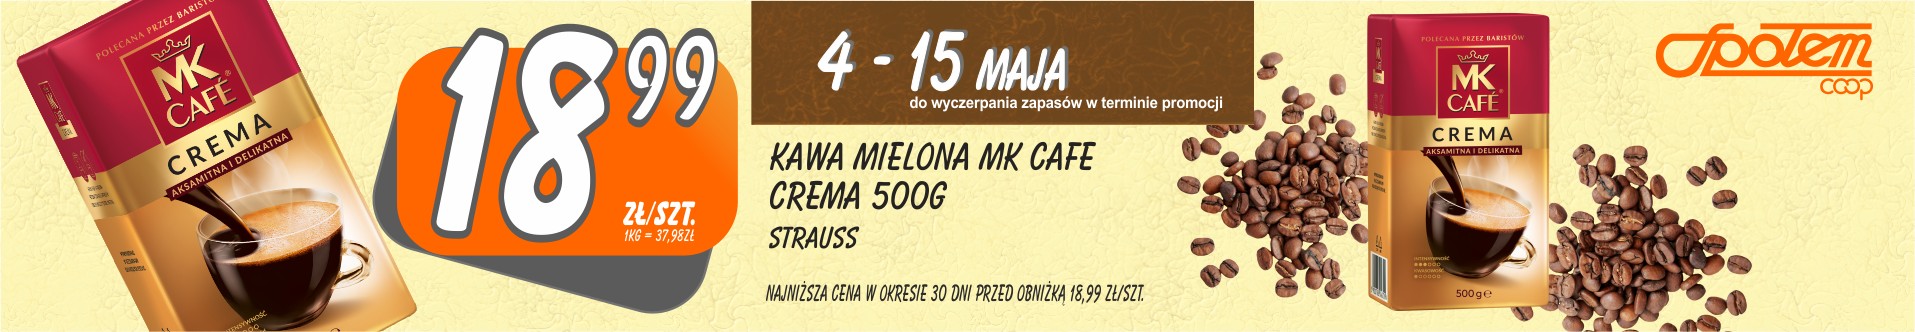 Sklepy Społem - KAWA MIELONA MK CAFE CREMA 500G